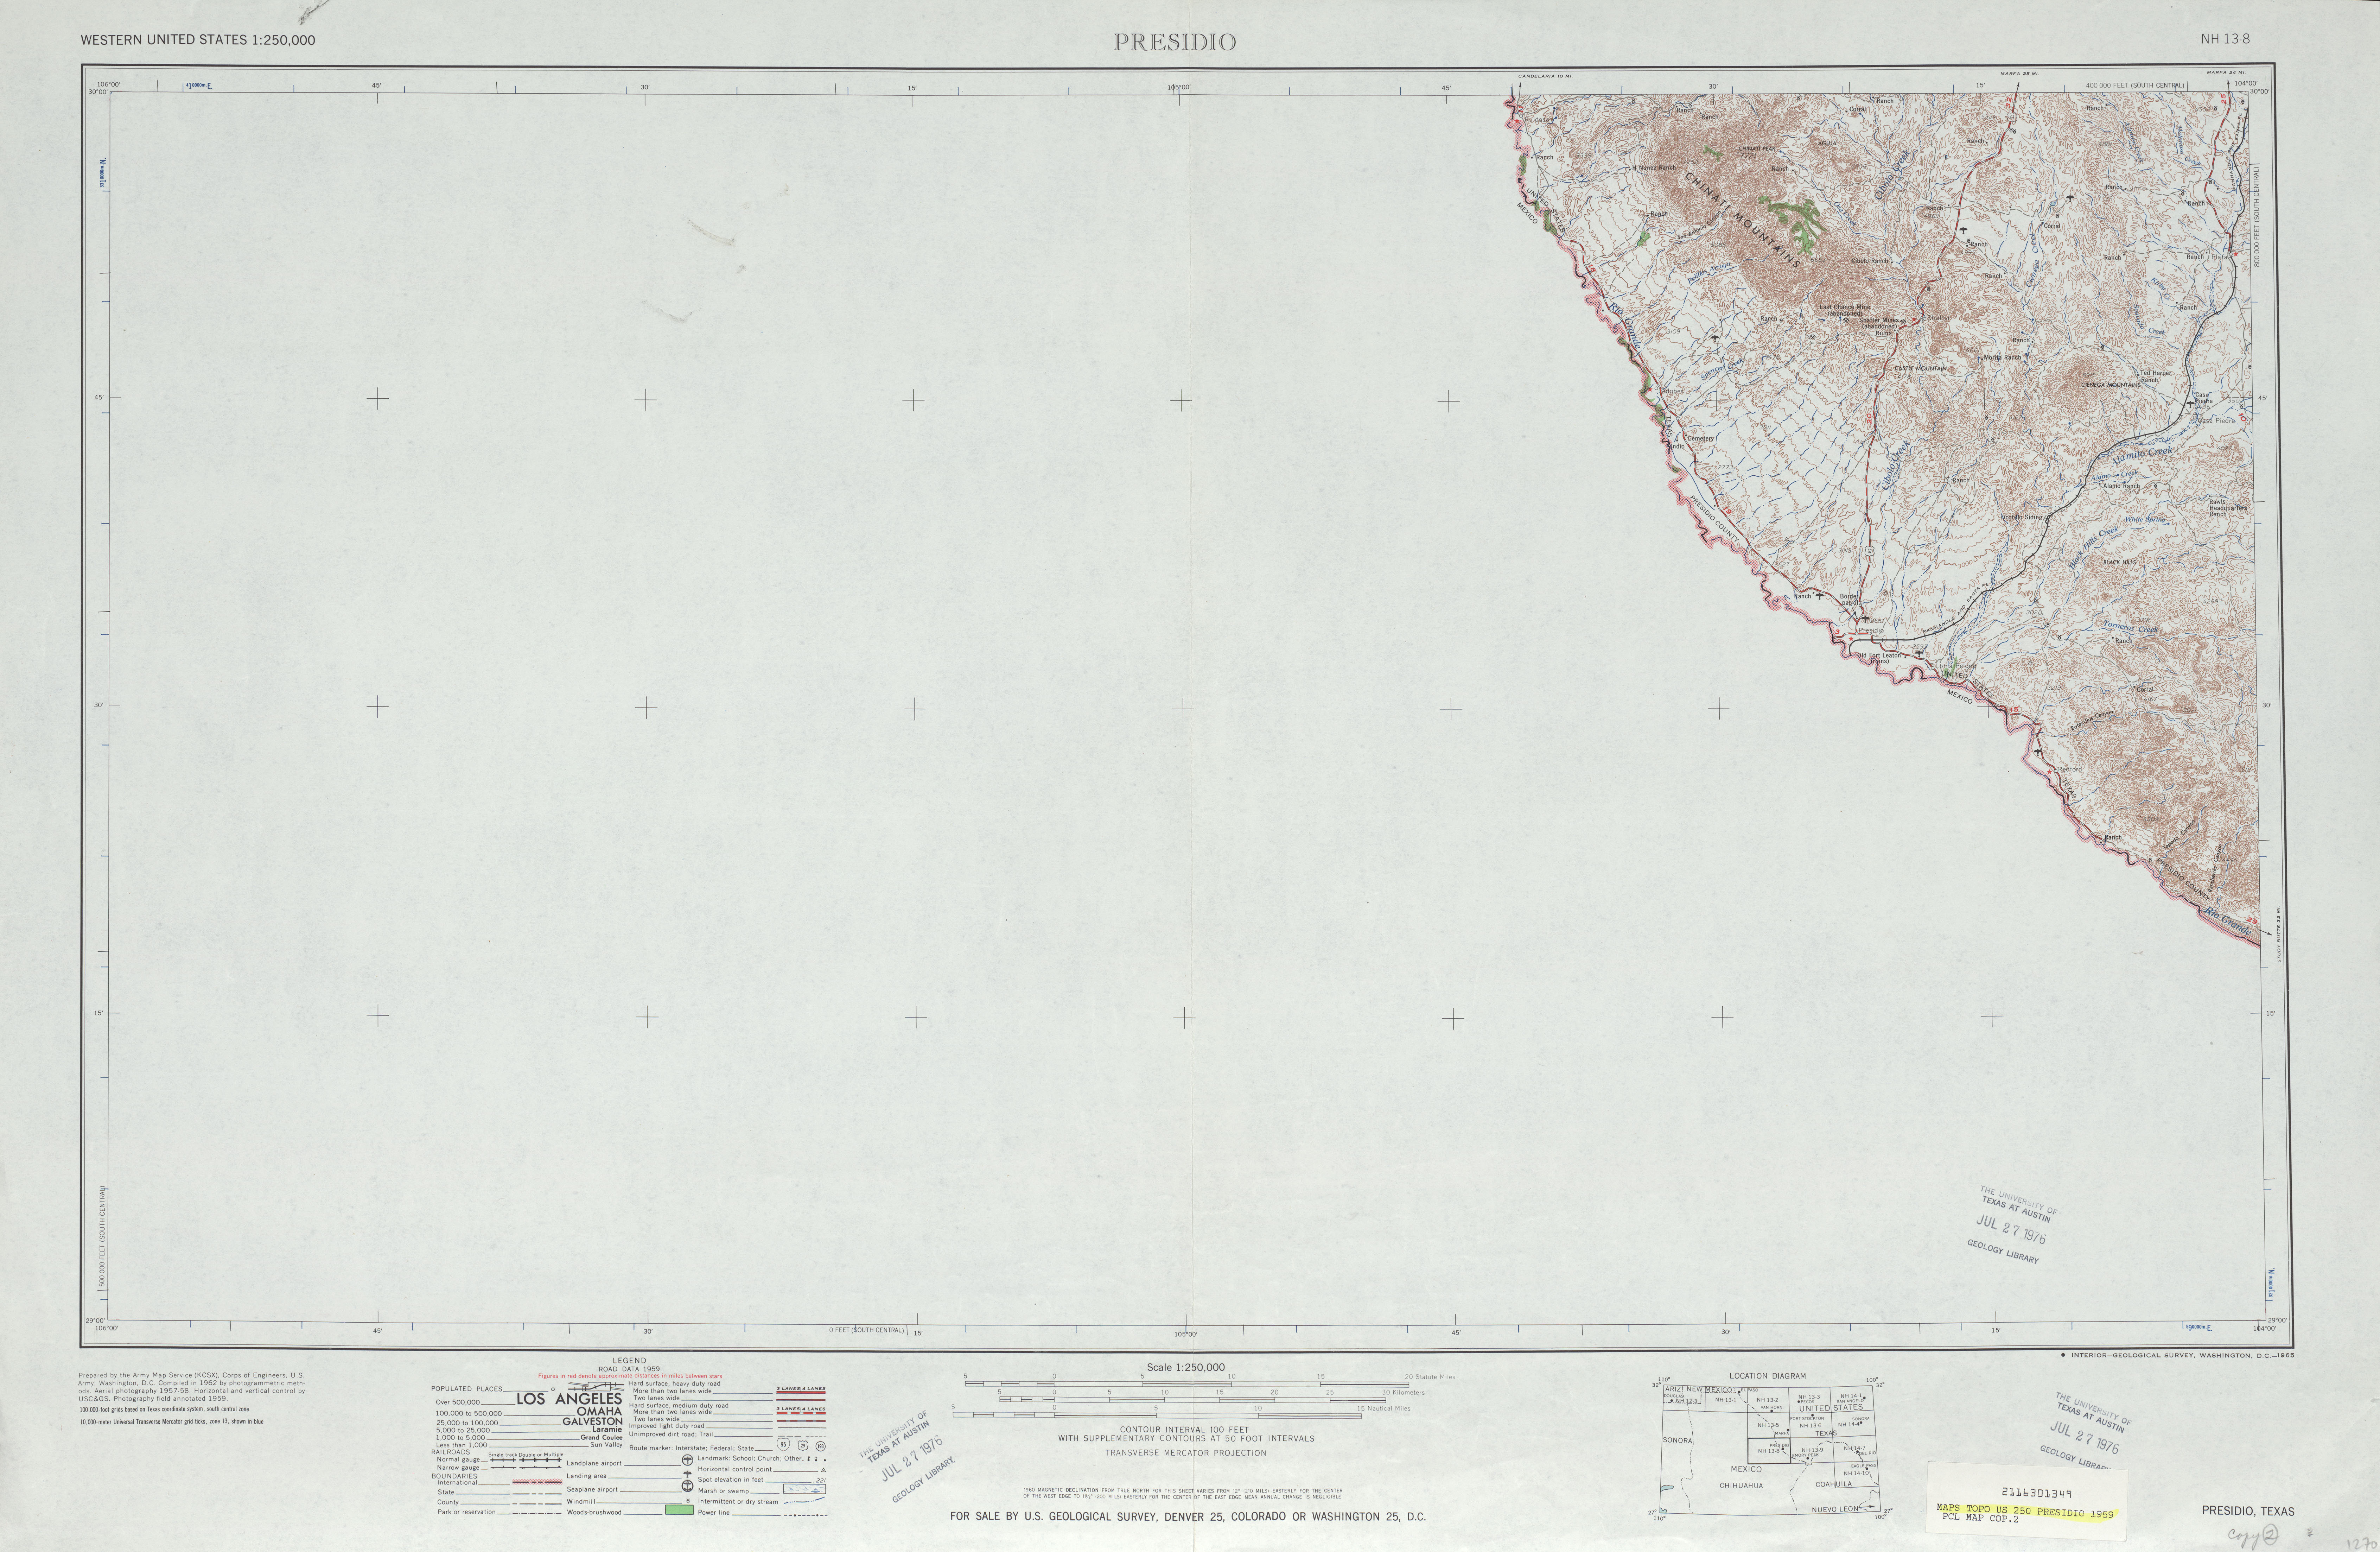 Hoja Presidio del Mapa Topográfico de los Estados Unidos 1959